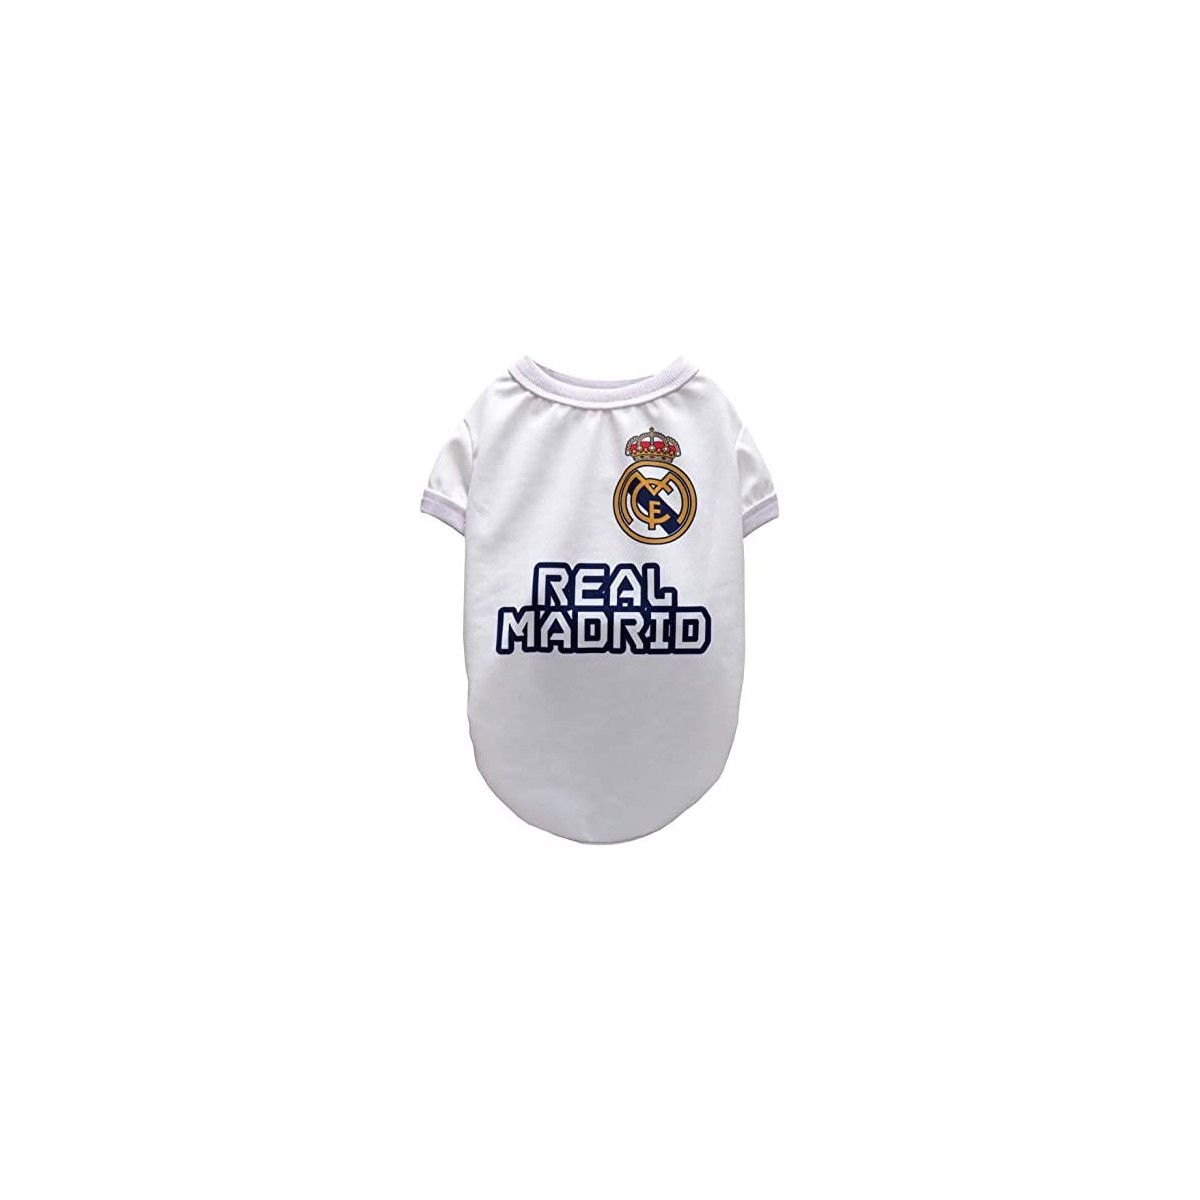 Maglietta per cani del Real Madrid, prodotto ufficiale